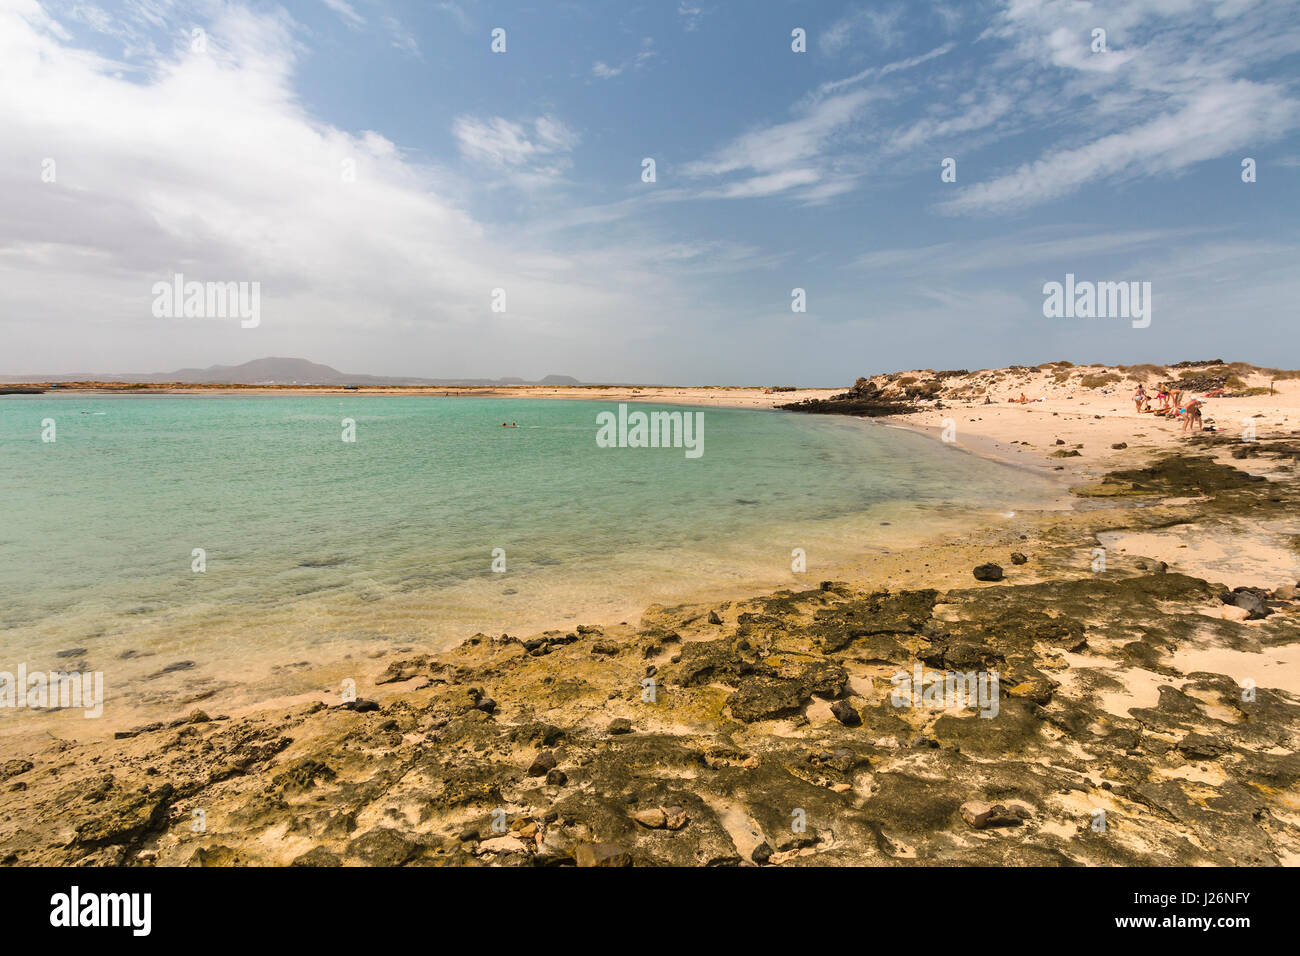 The Isla de Lobos in Fuerteventura, Spain with the Playa de la Concha. Stock Photo